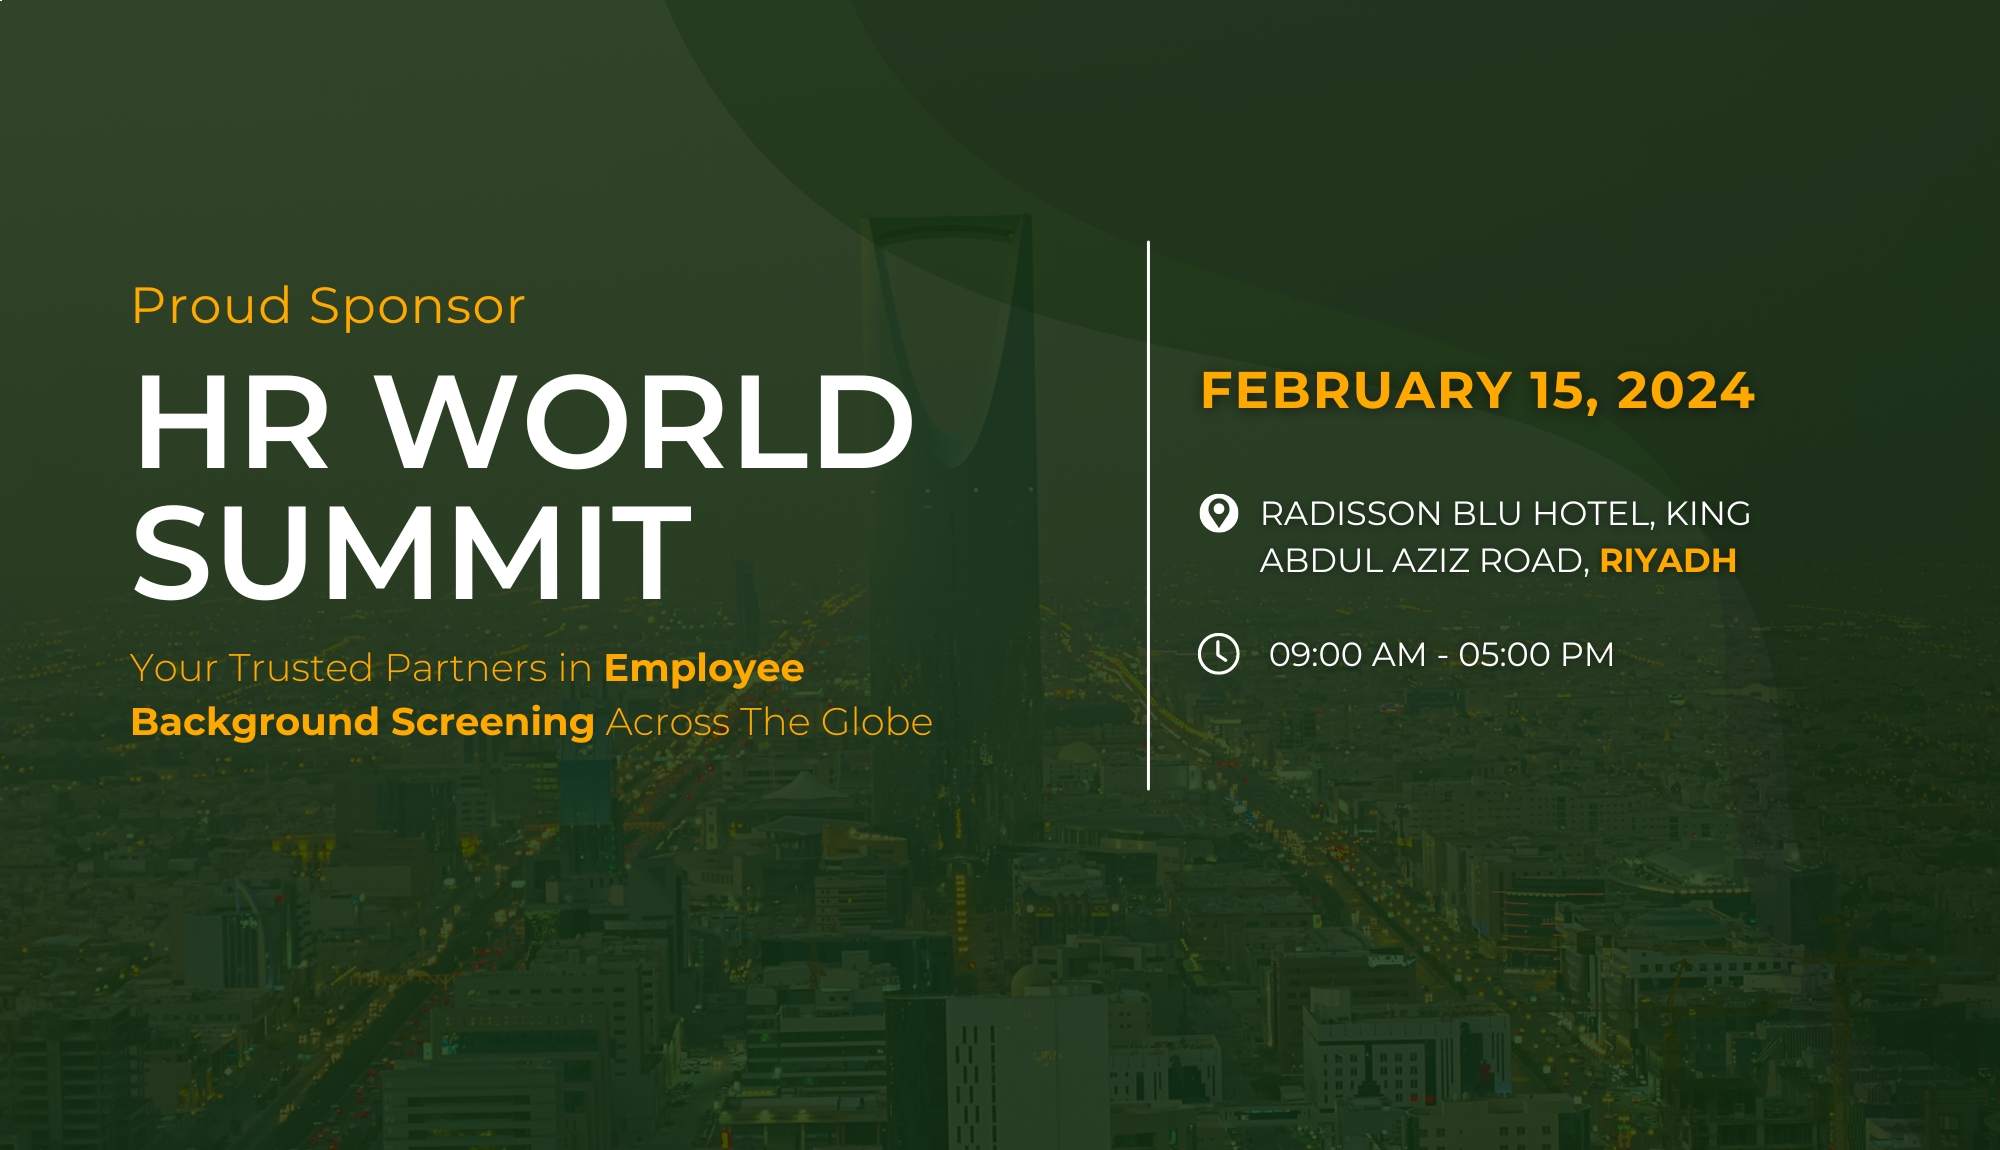 HR World Summit 15 February 2024 Riyadh -  CRI GroupTM